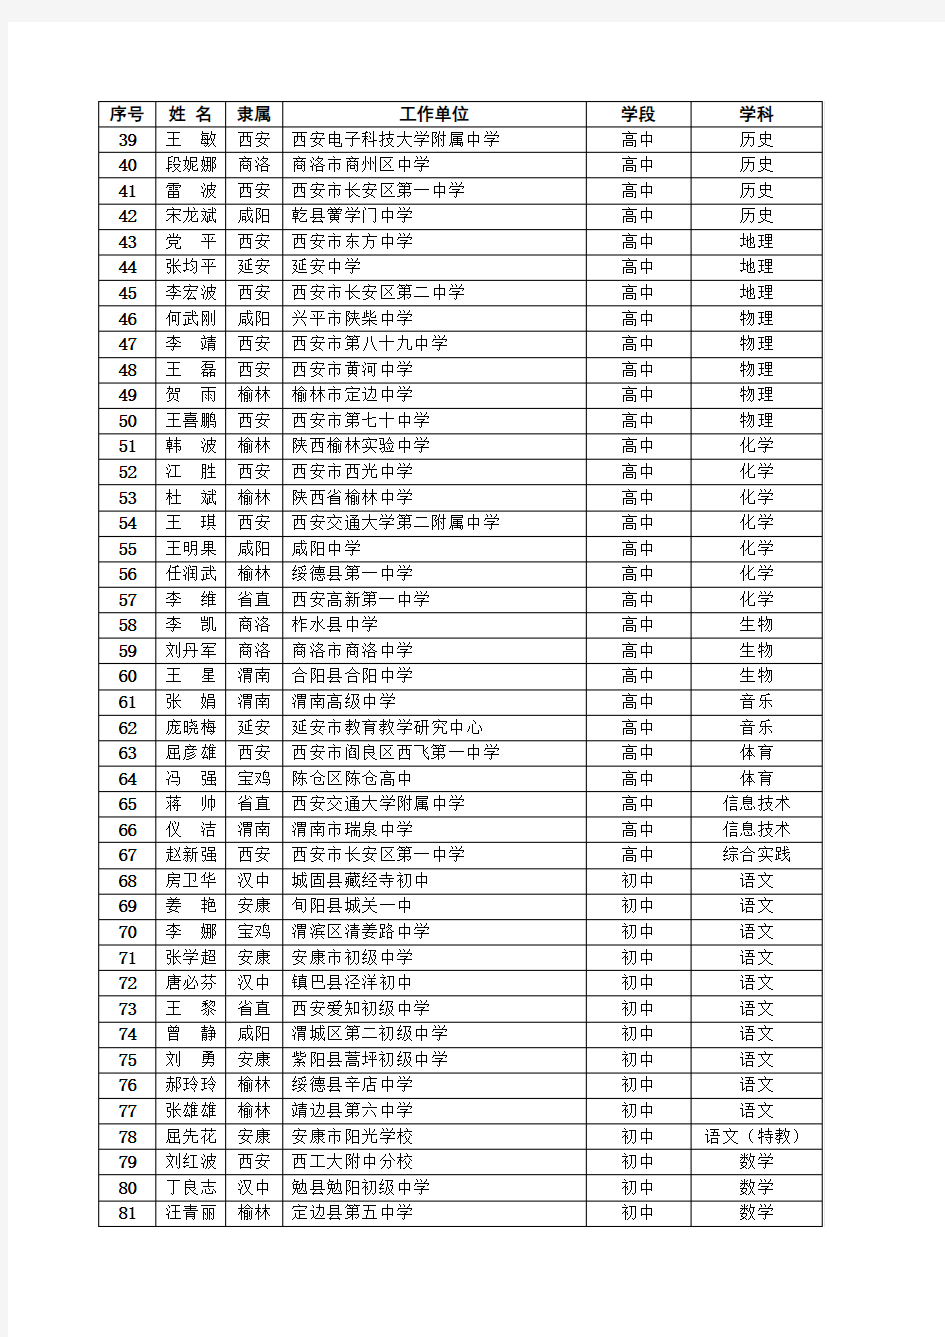 陕西省中小学学科带头人名单(第三批)